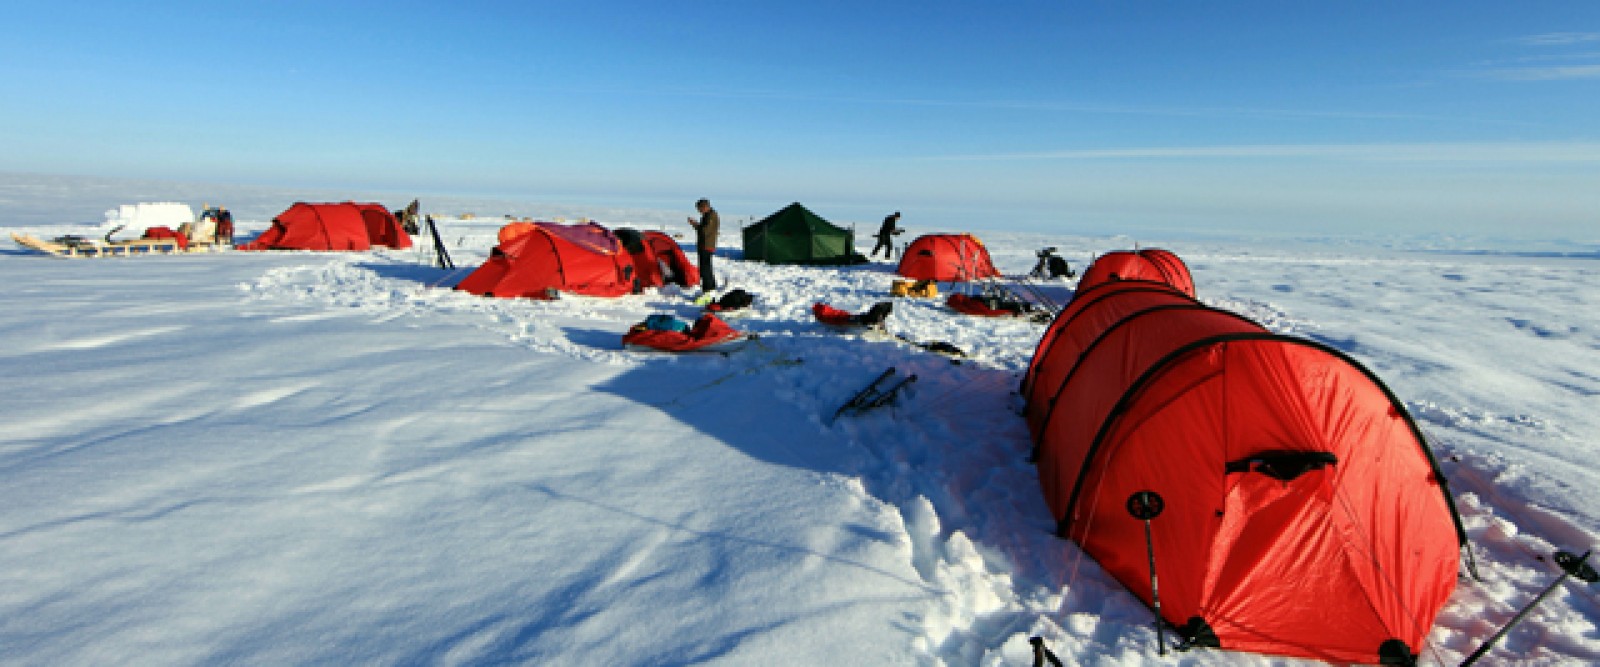 Weisser Horizont - Robert Peroni letzte Reise ins ewige Eis Grönlands